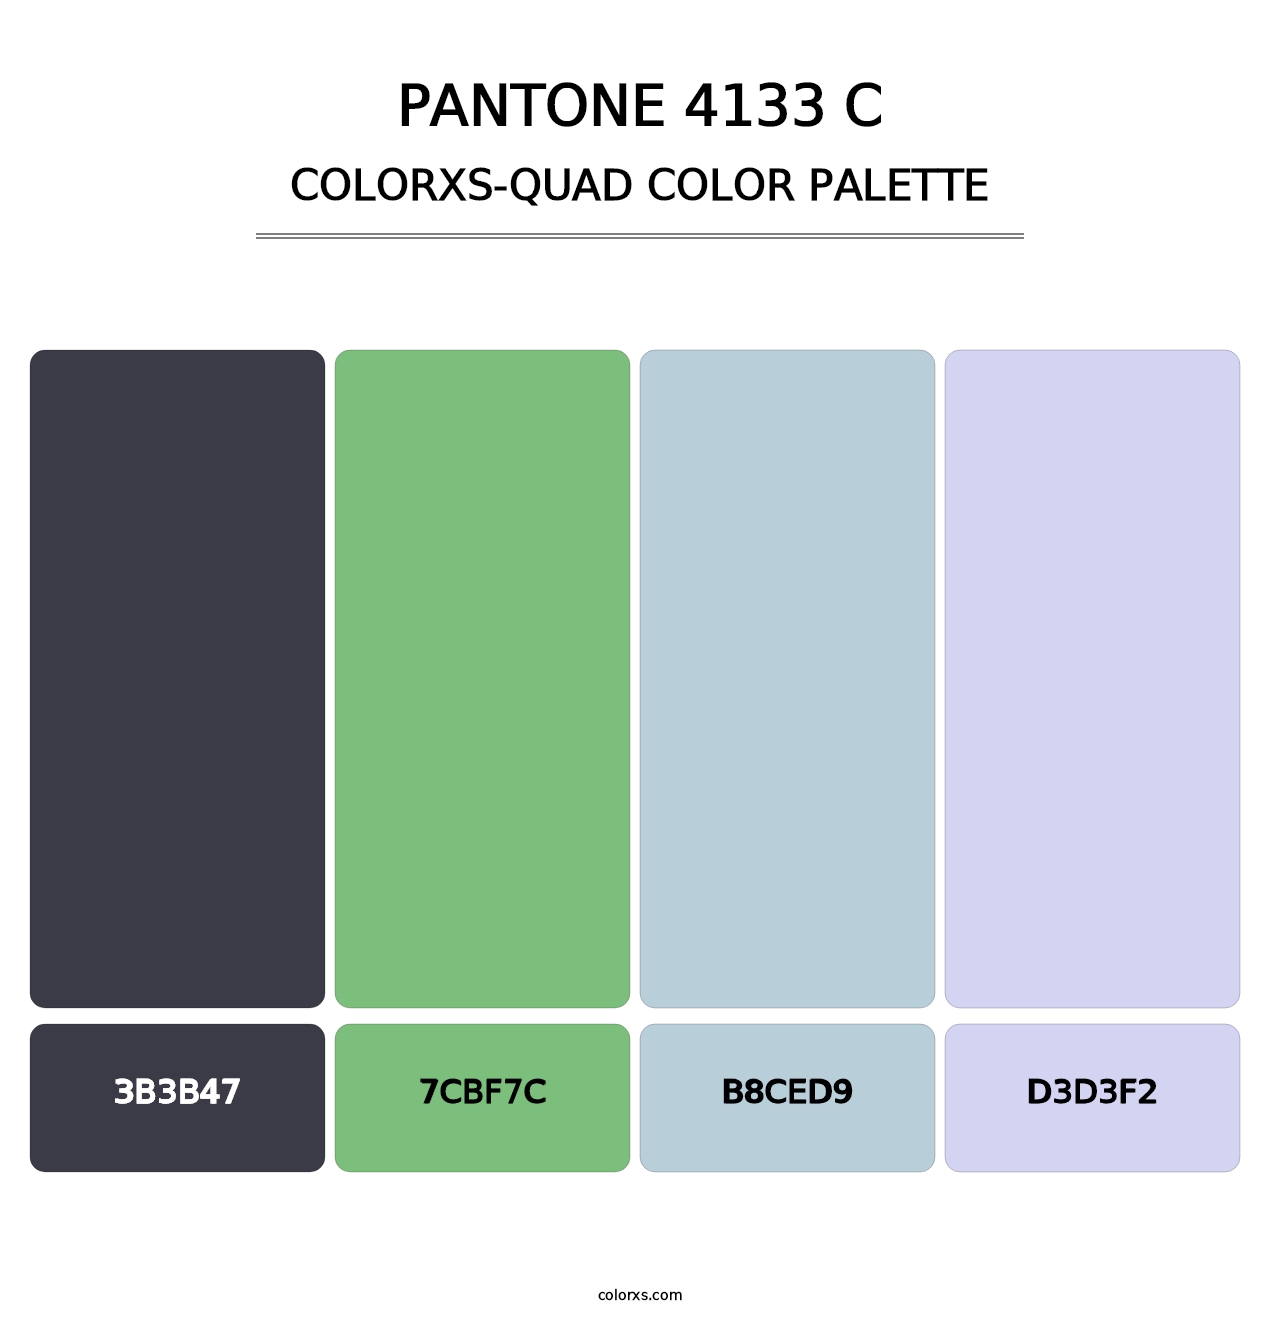 PANTONE 4133 C - Colorxs Quad Palette